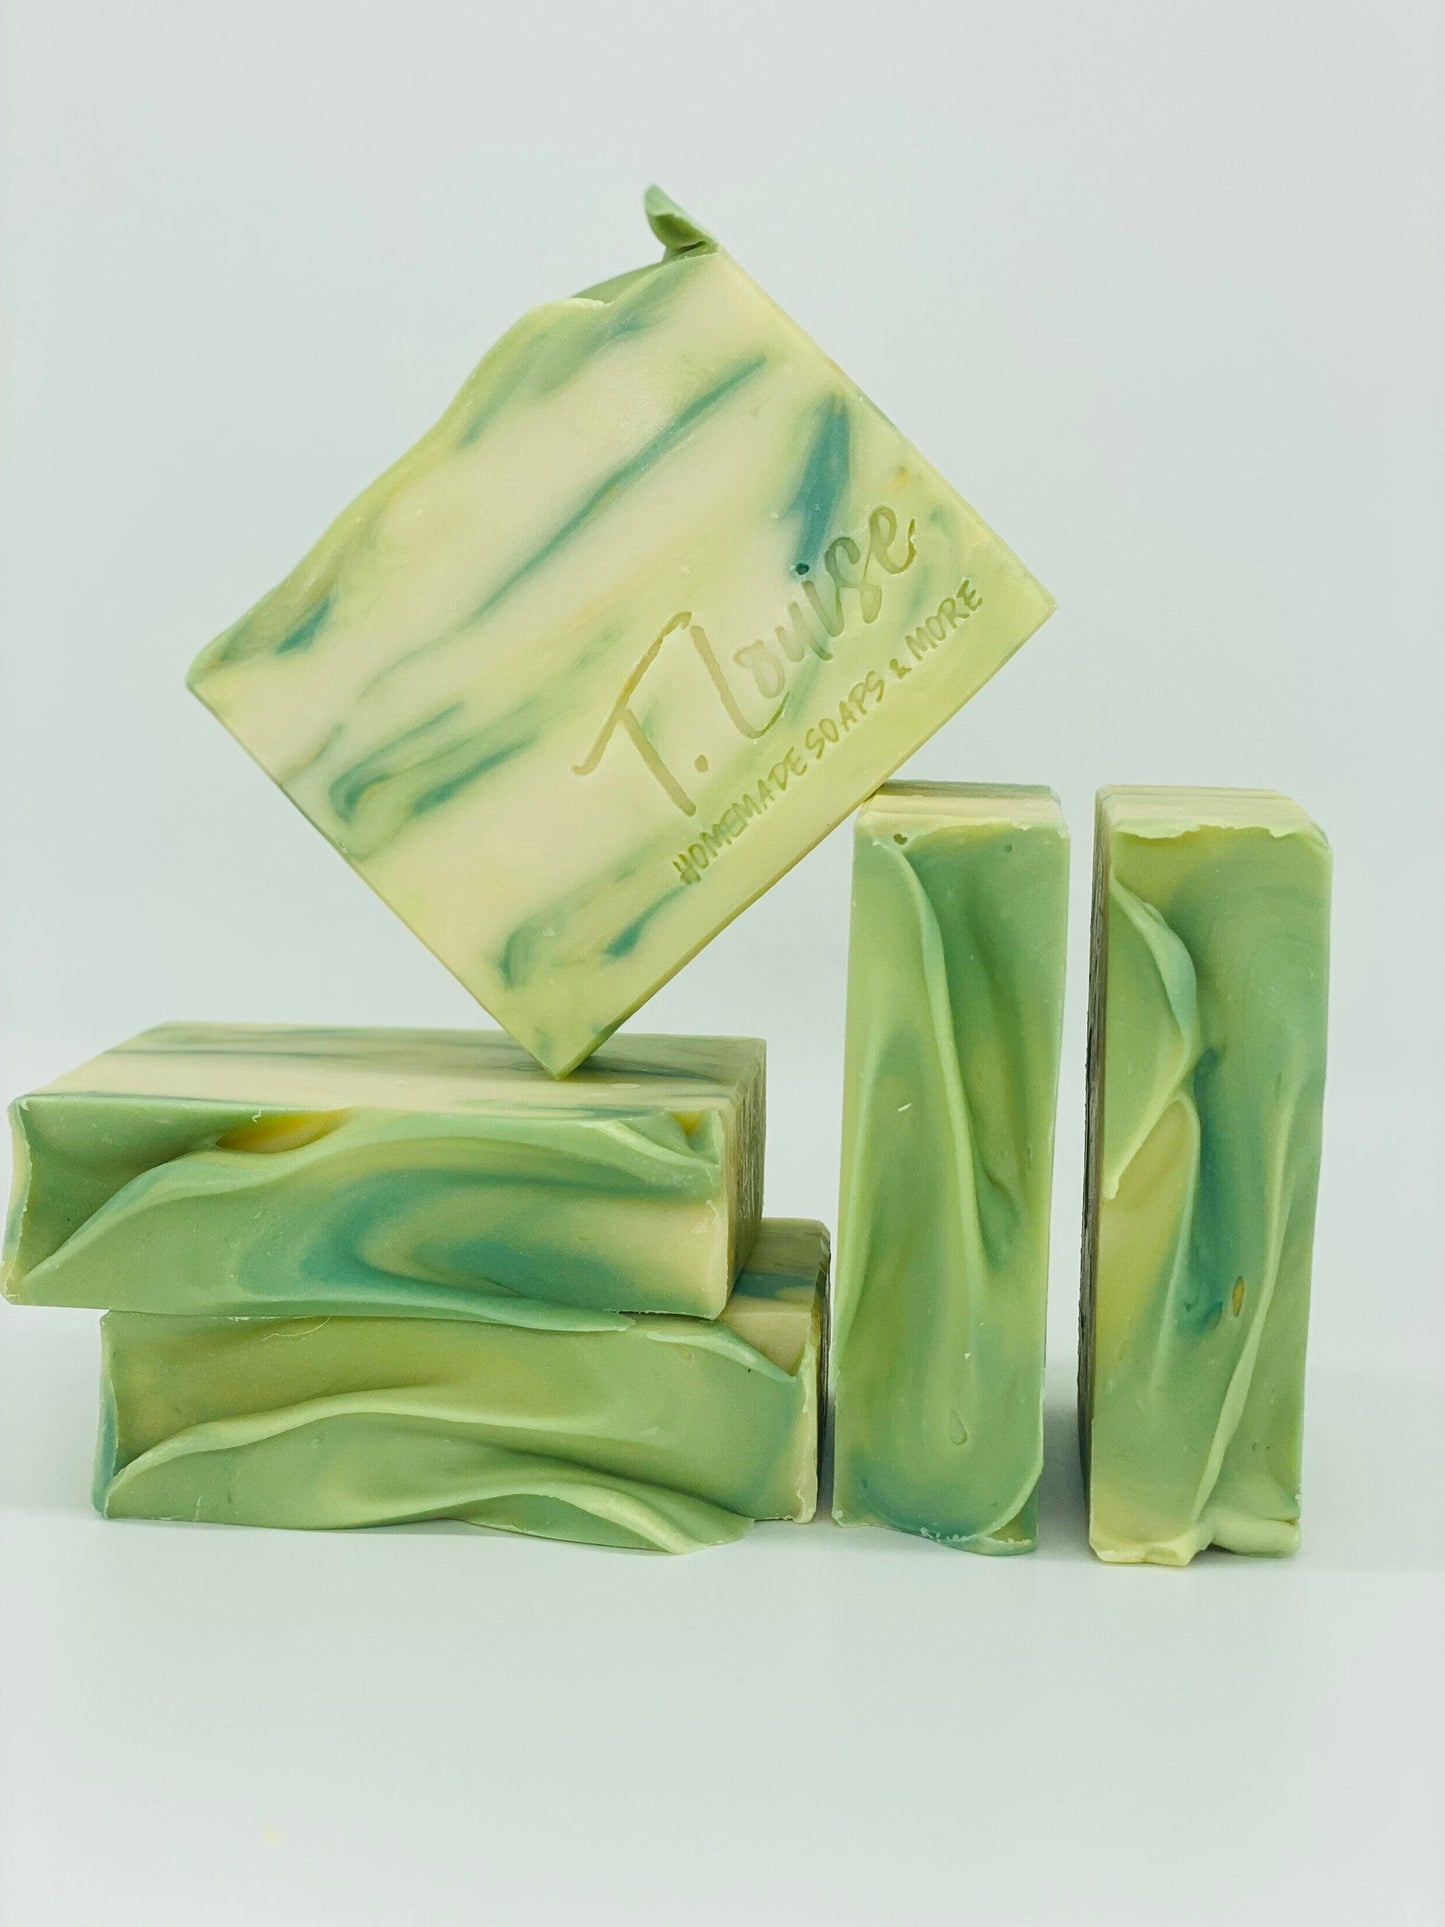 Secret Garden handmade soap